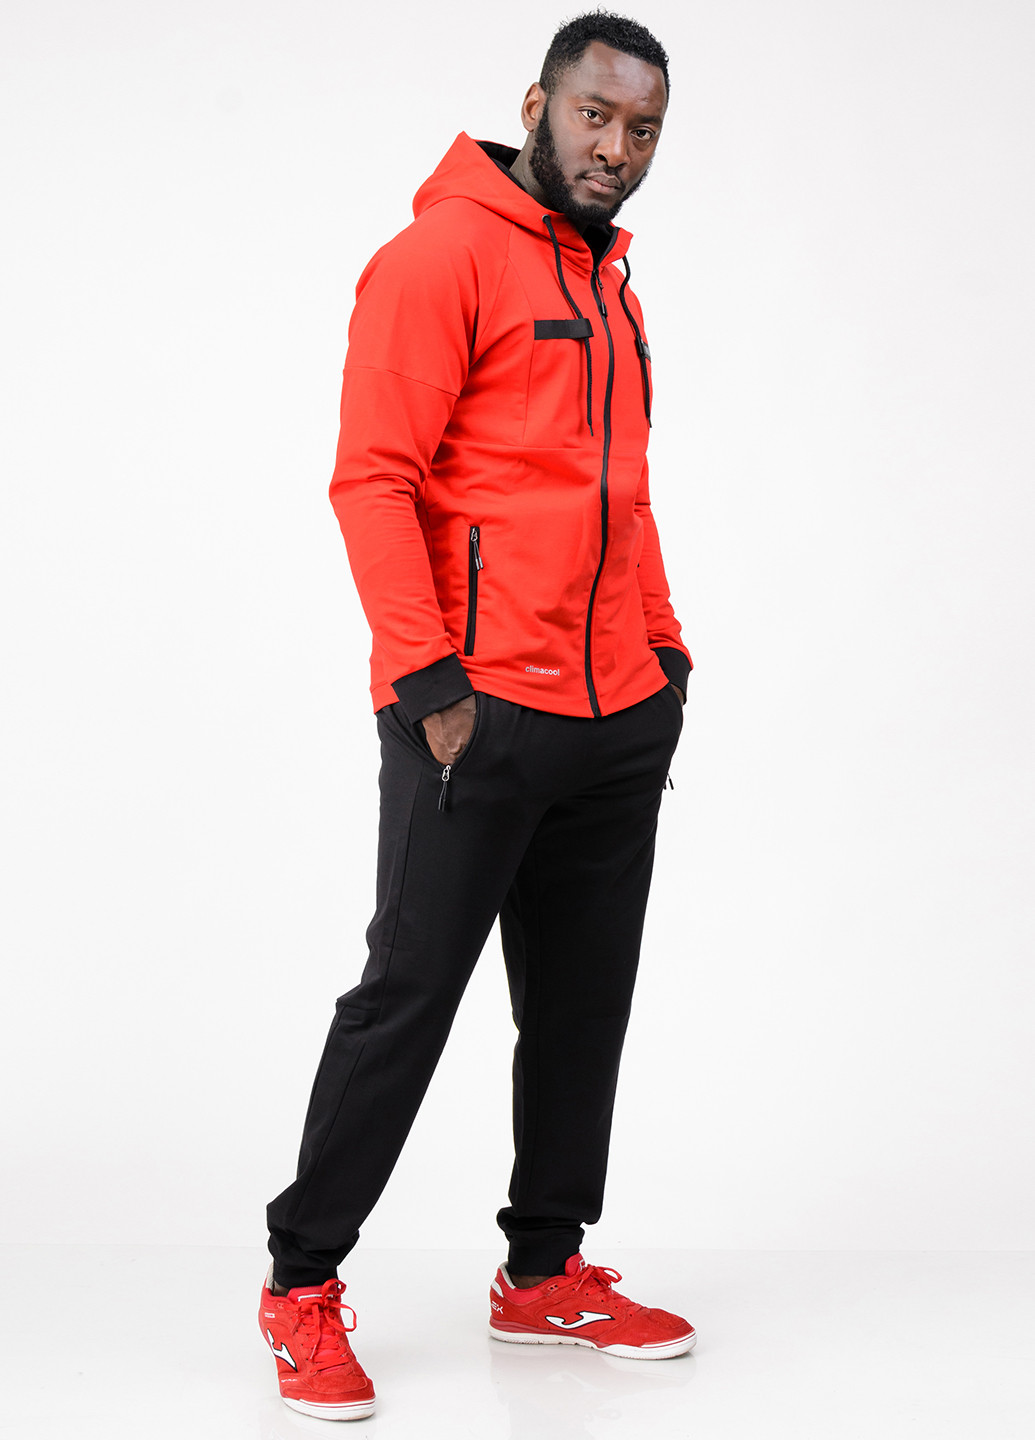 Красный демисезонный костюм (толстовка, брюки) брючный SA-sport